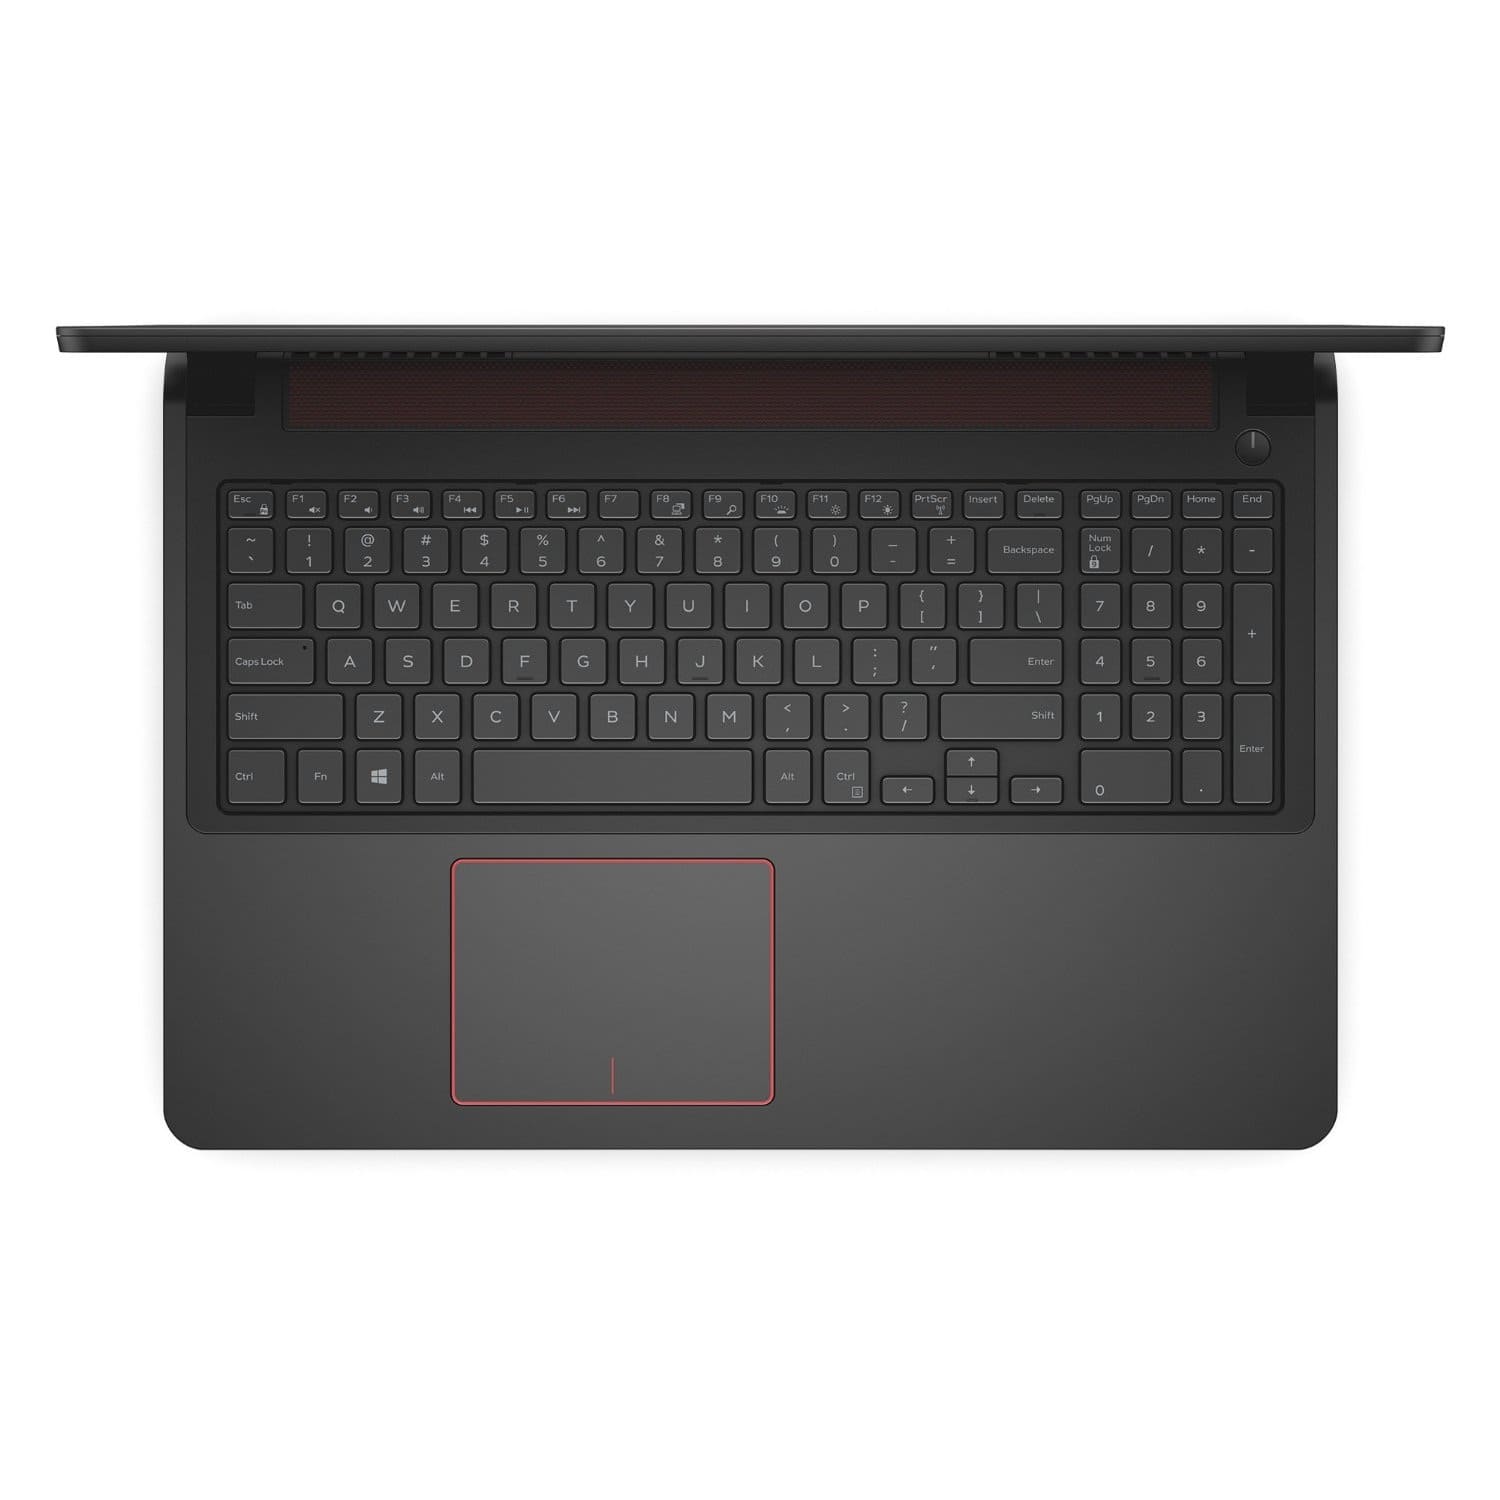 Laptop Dell Inspiron 7559A: Cỗ máy mạnh mẽ chơi game cực đỉnh